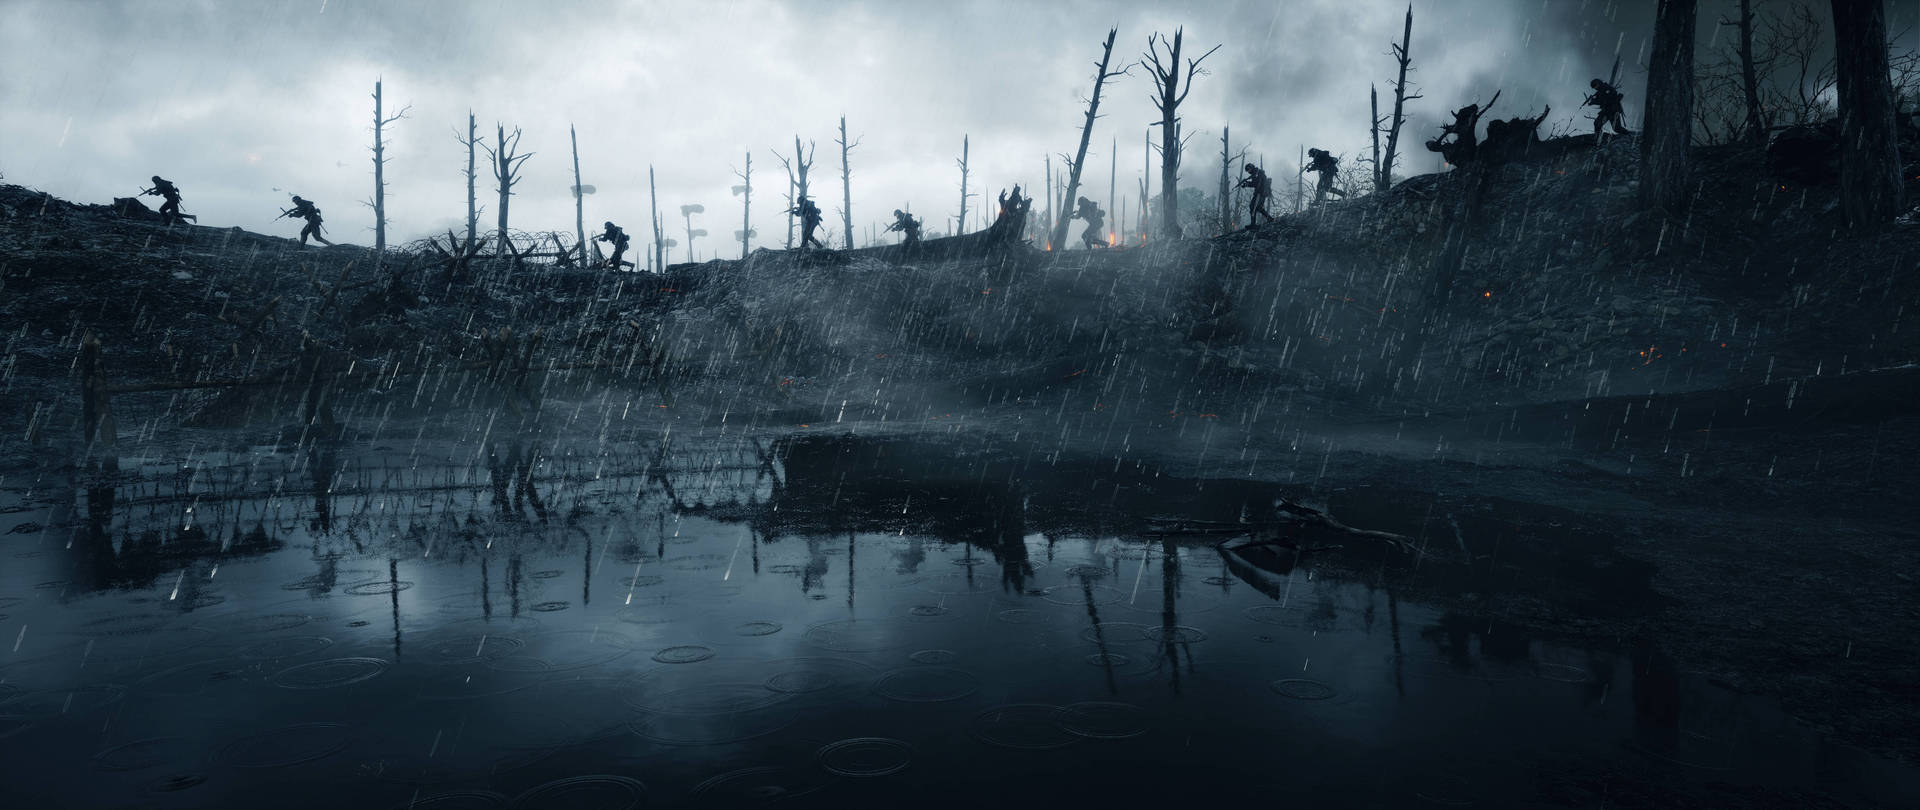 Battlefield 1 Hd Apocalypse Wallpaper